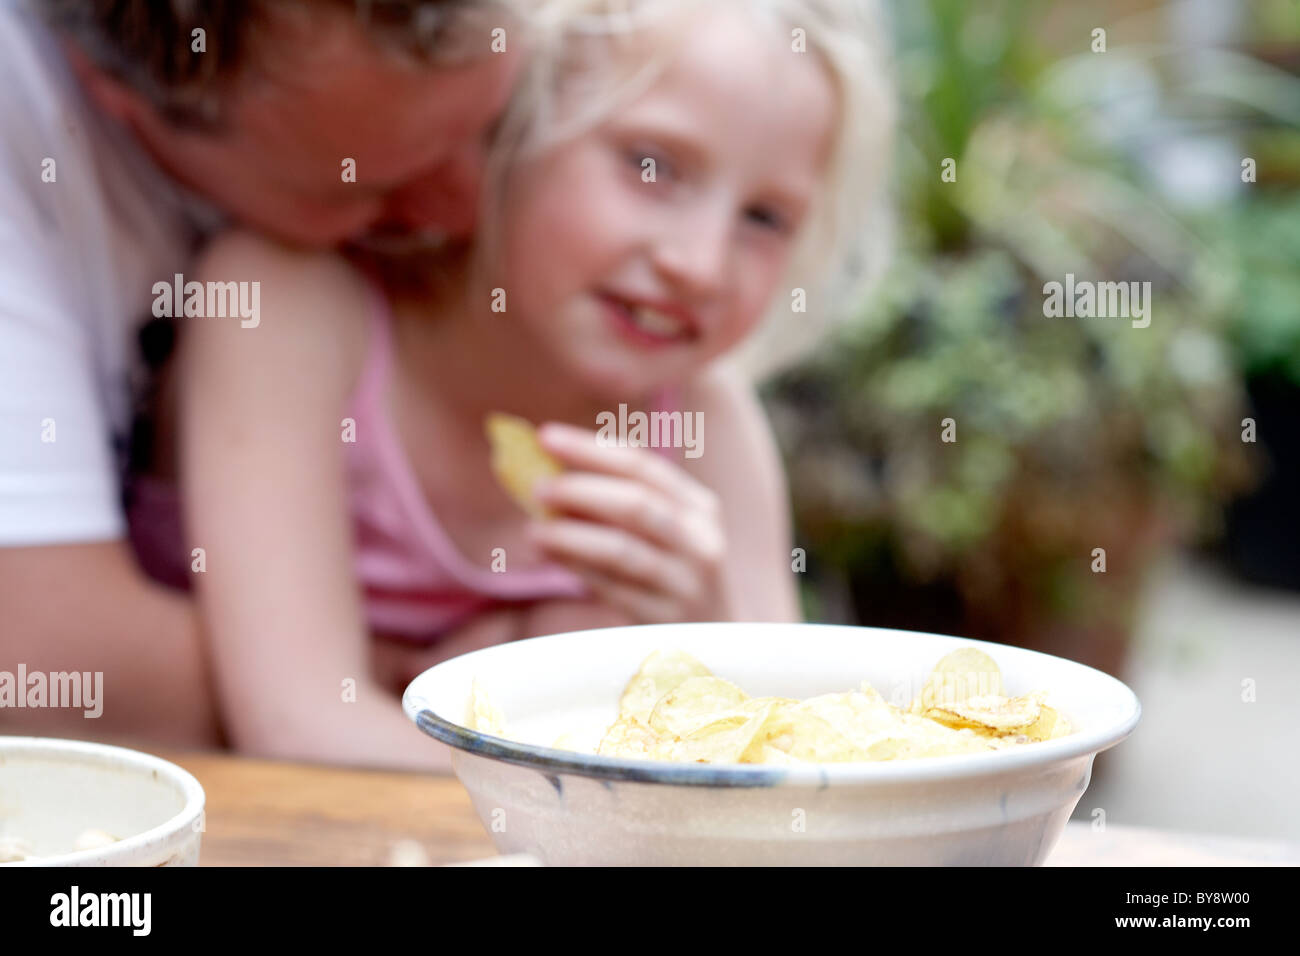 Child eating crisps Stock Photo